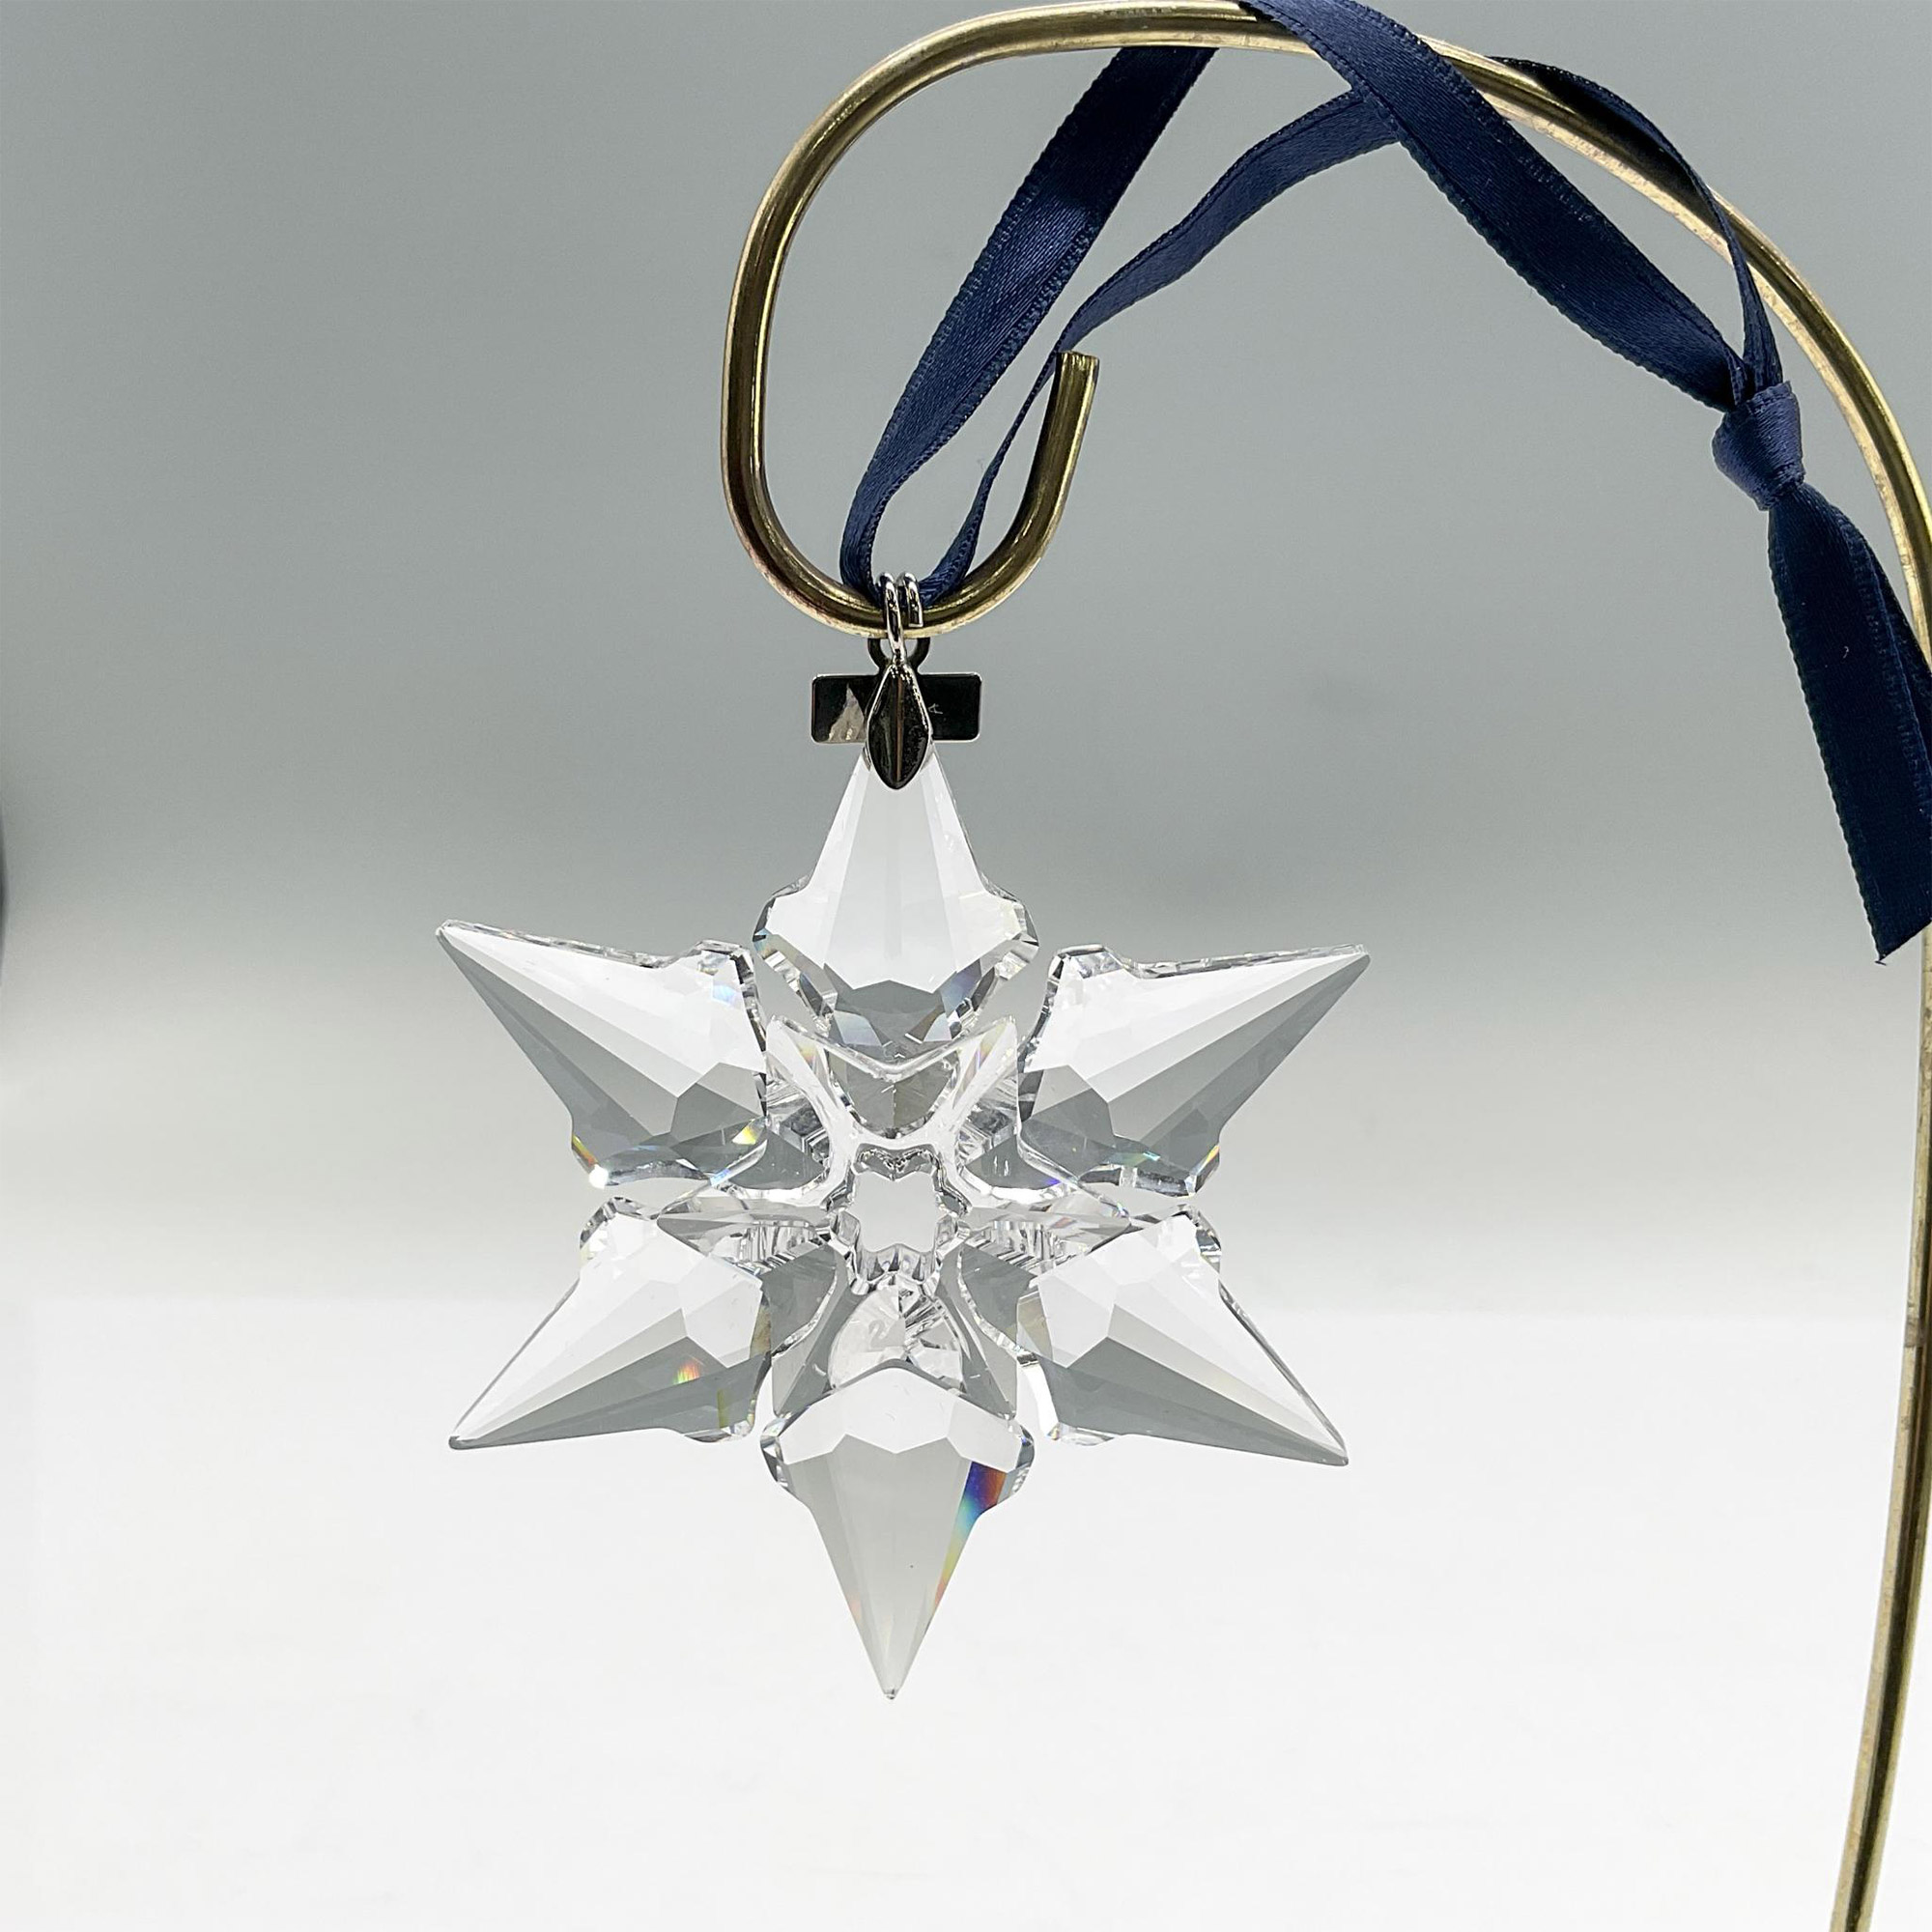 Swarovski Crystal Christmas Ornament 2000 - Image 2 of 3